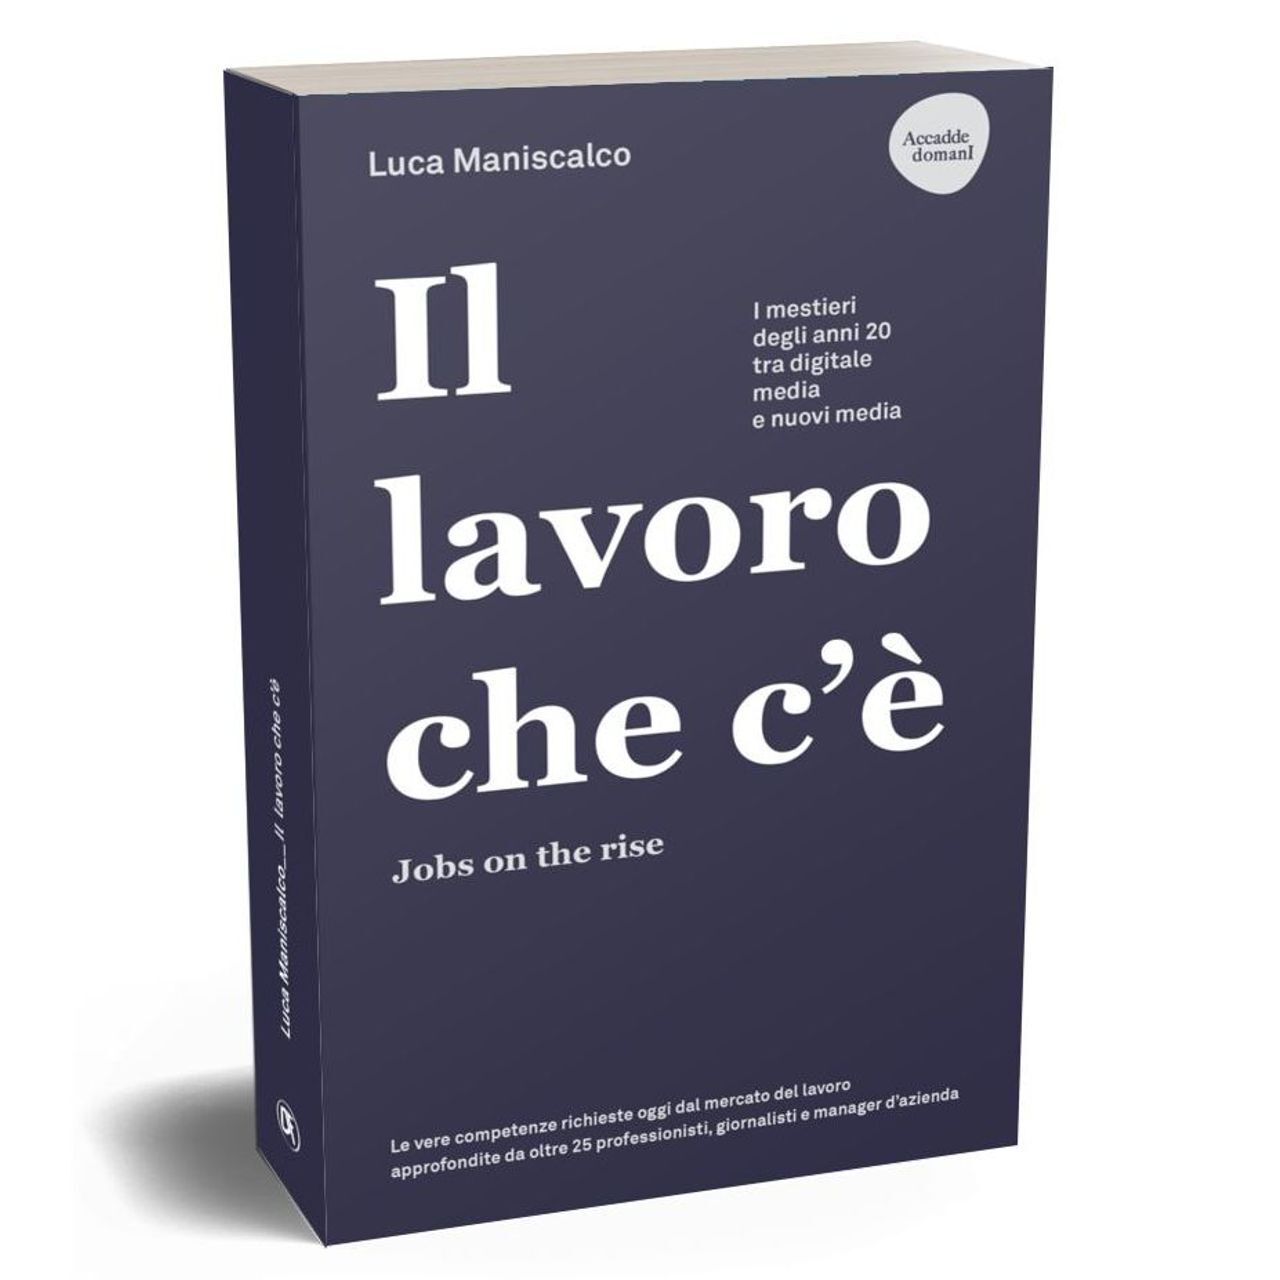 წიგნის ყდა „ნაწარმოები, რომელიც არსებობს. სამუშაოები იზრდება“ ლუკა მანისკალკოს მიერ, გამომცემლობა Dario Flaccovio Editore